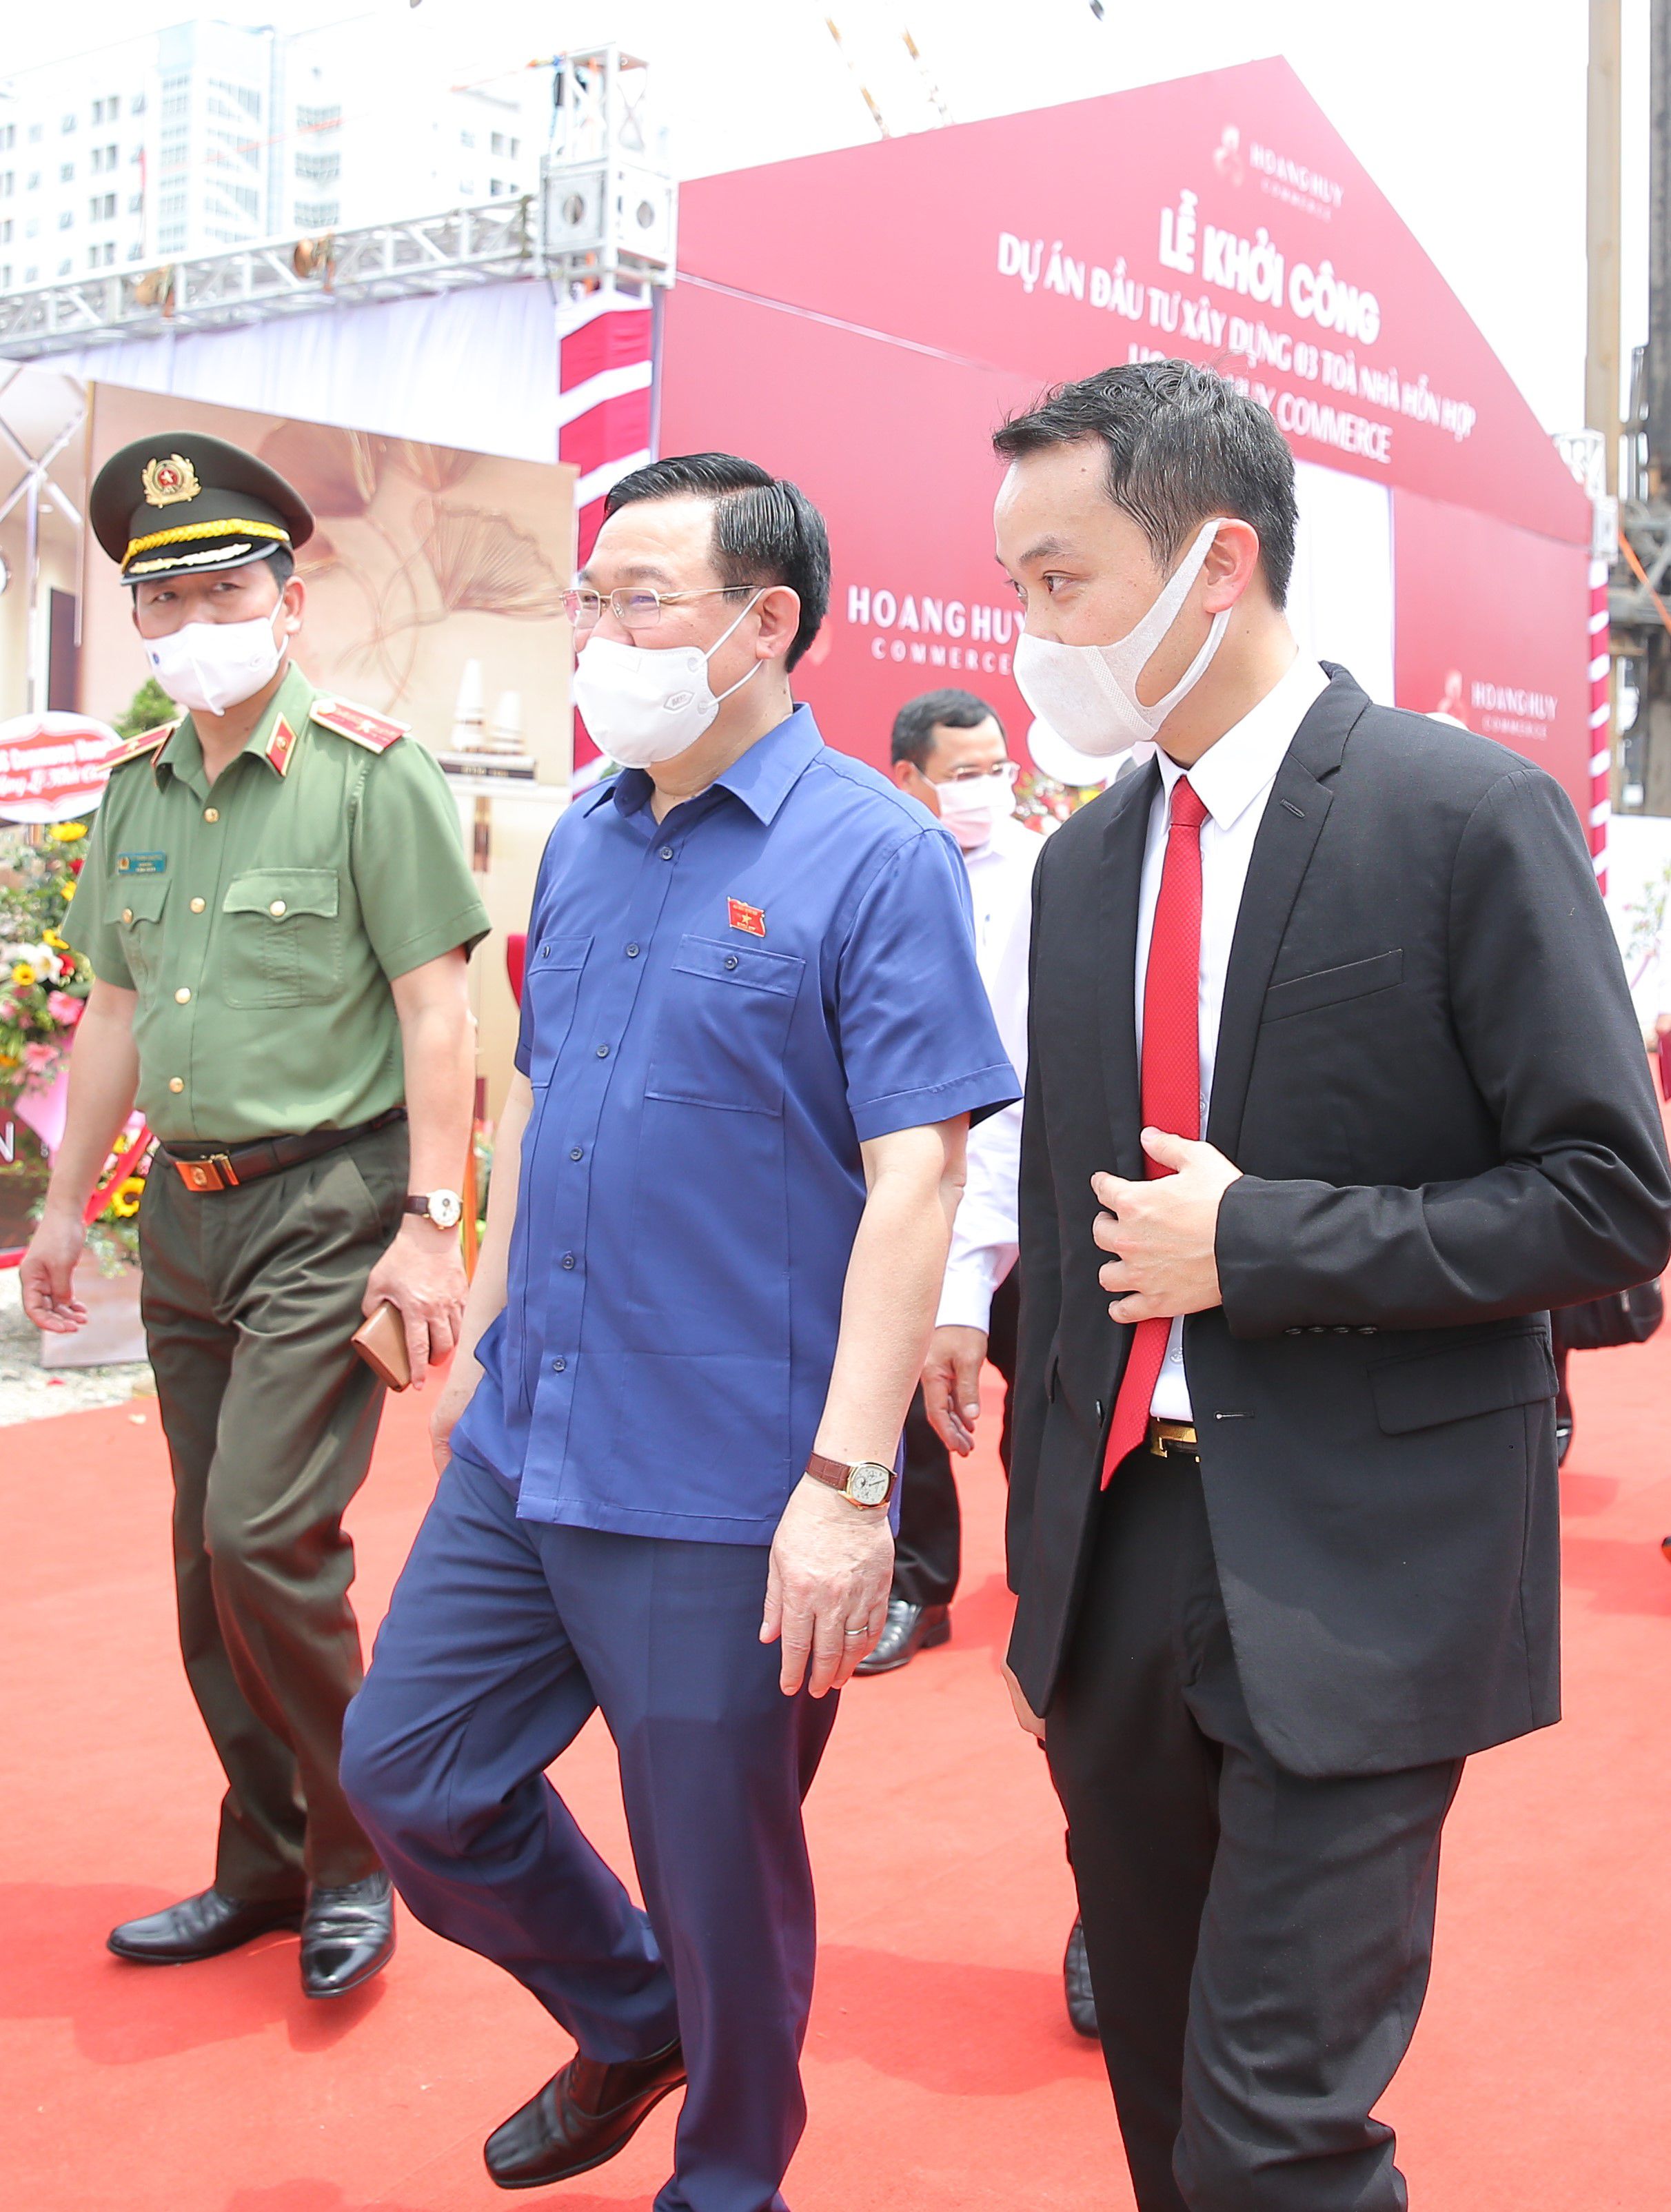 Chủ tịch Quốc hội Vương Đình Huệ tham dự lễ khởi công dự án Hoang Huy Commerce do Tập đoàn Hoàng Huy làm chủ đầu tư.